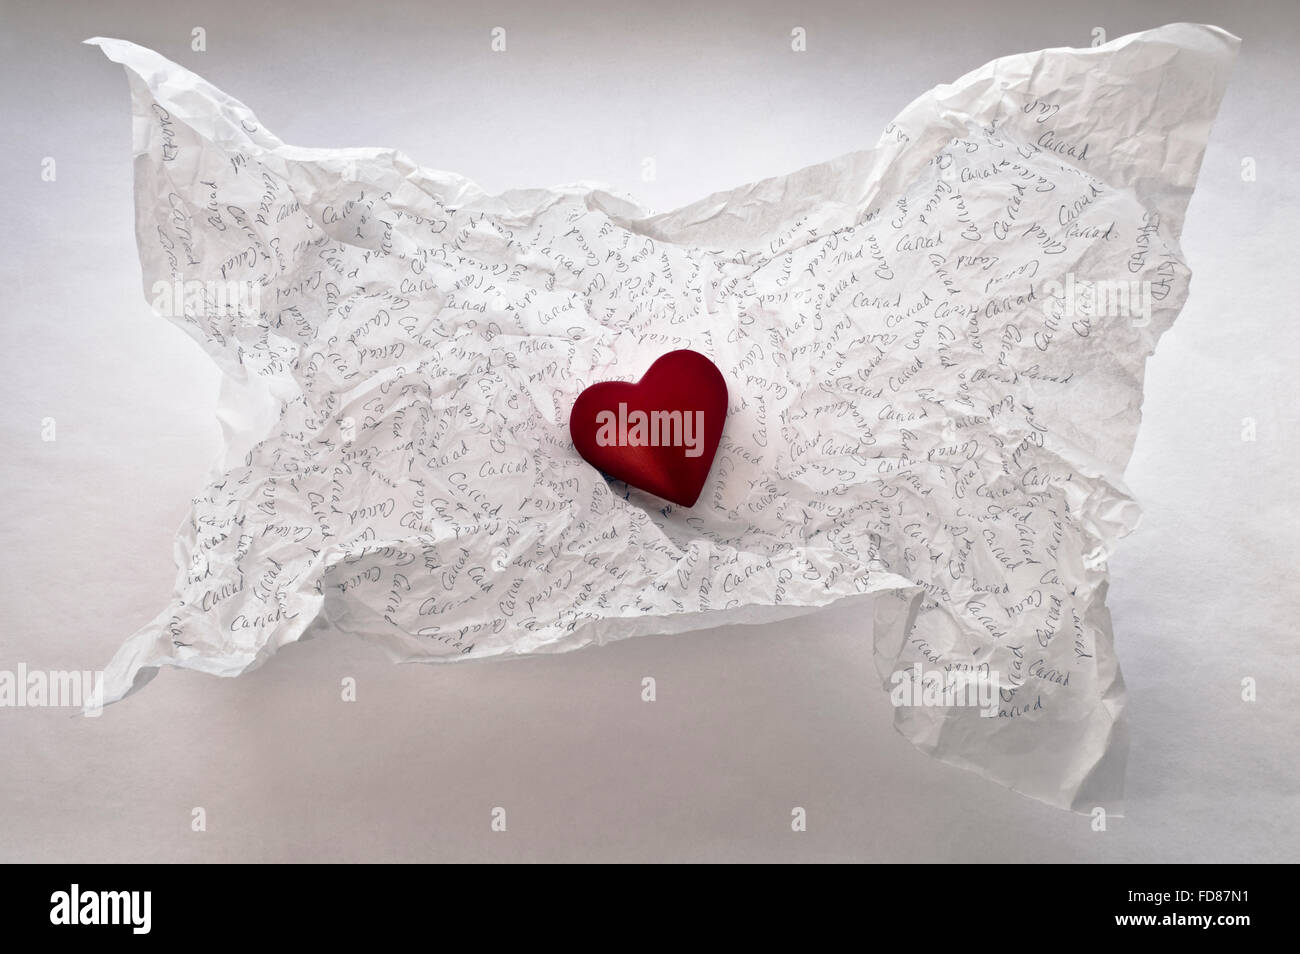 Un corazón rojo en un fondo de papel tisú blanco arrugado que se ha inscrito con 'Cariad', la palabra galesa para 'amor'. Foto de stock